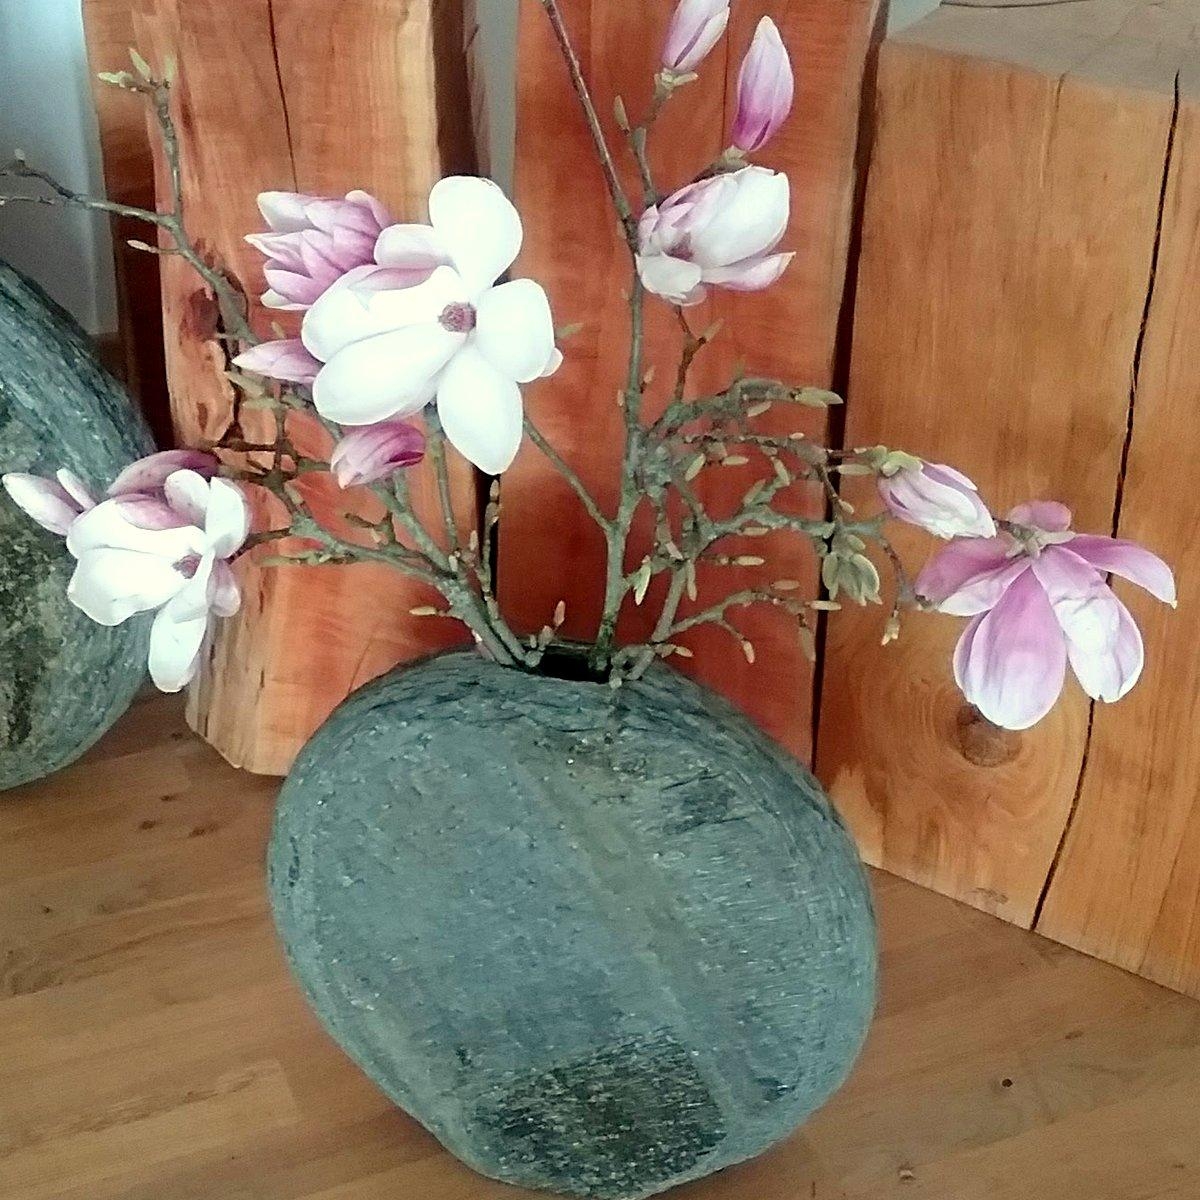 #Magnolienblüten sehen auch in einer #Steinvase wunderschön aus, oder ?
#Vasenliebe #dekoidee